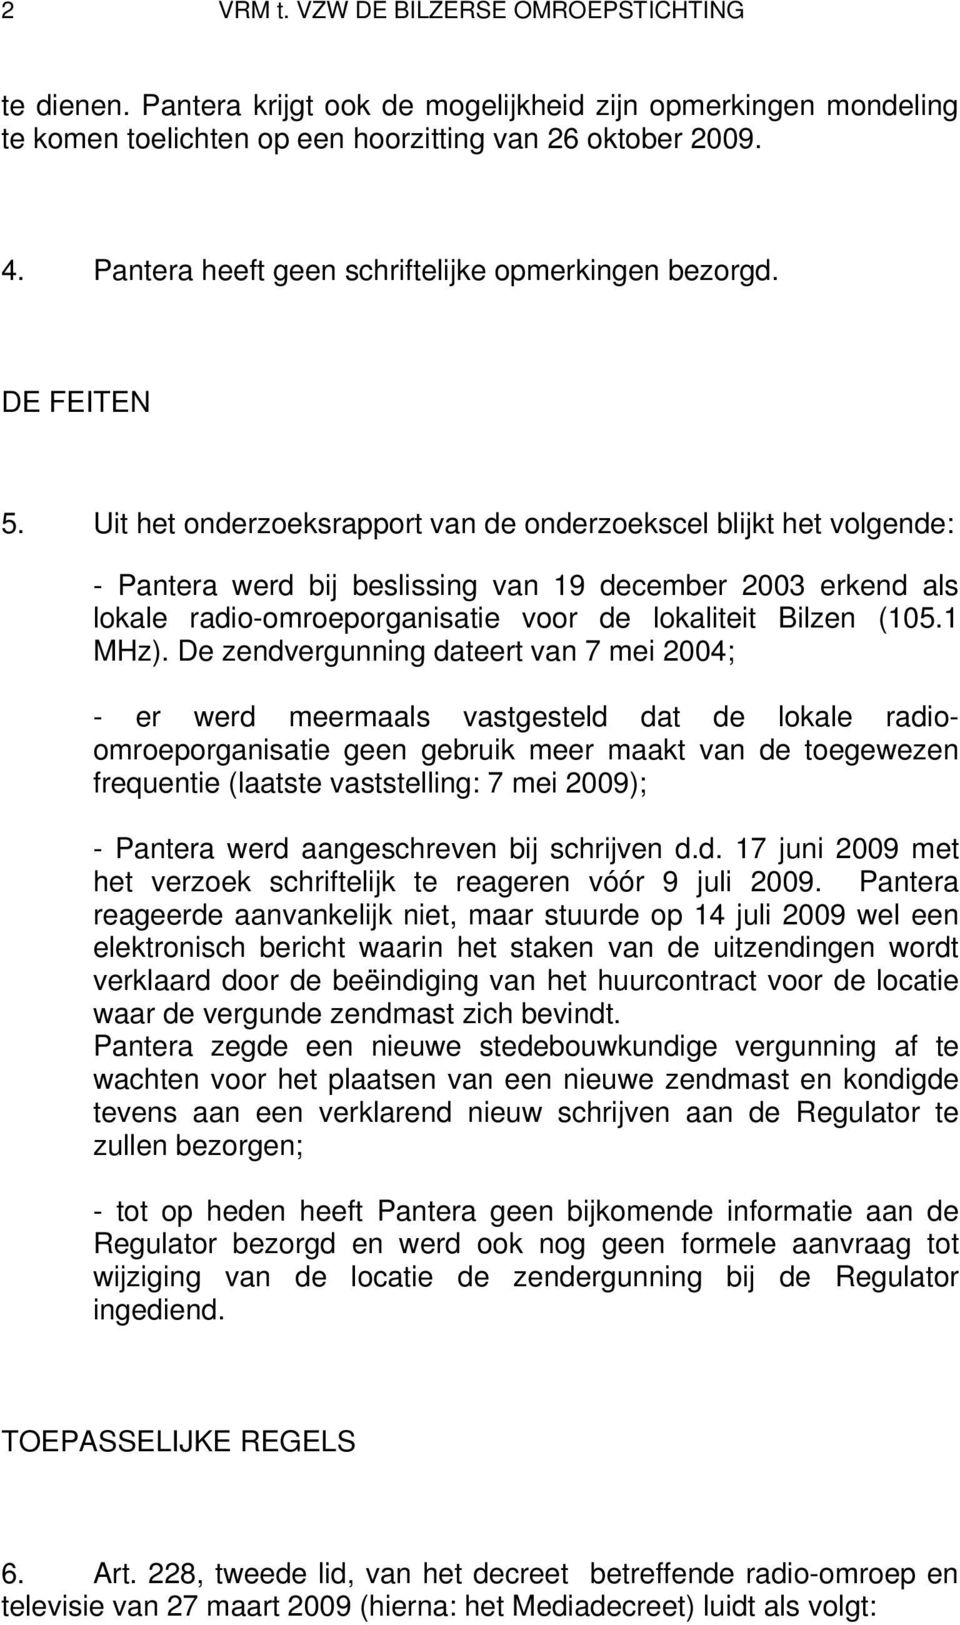 Uit het onderzoeksrapport van de onderzoekscel blijkt het volgende: - Pantera werd bij beslissing van 19 december 2003 erkend als lokale radio-omroeporganisatie voor de lokaliteit Bilzen (105.1 MHz).